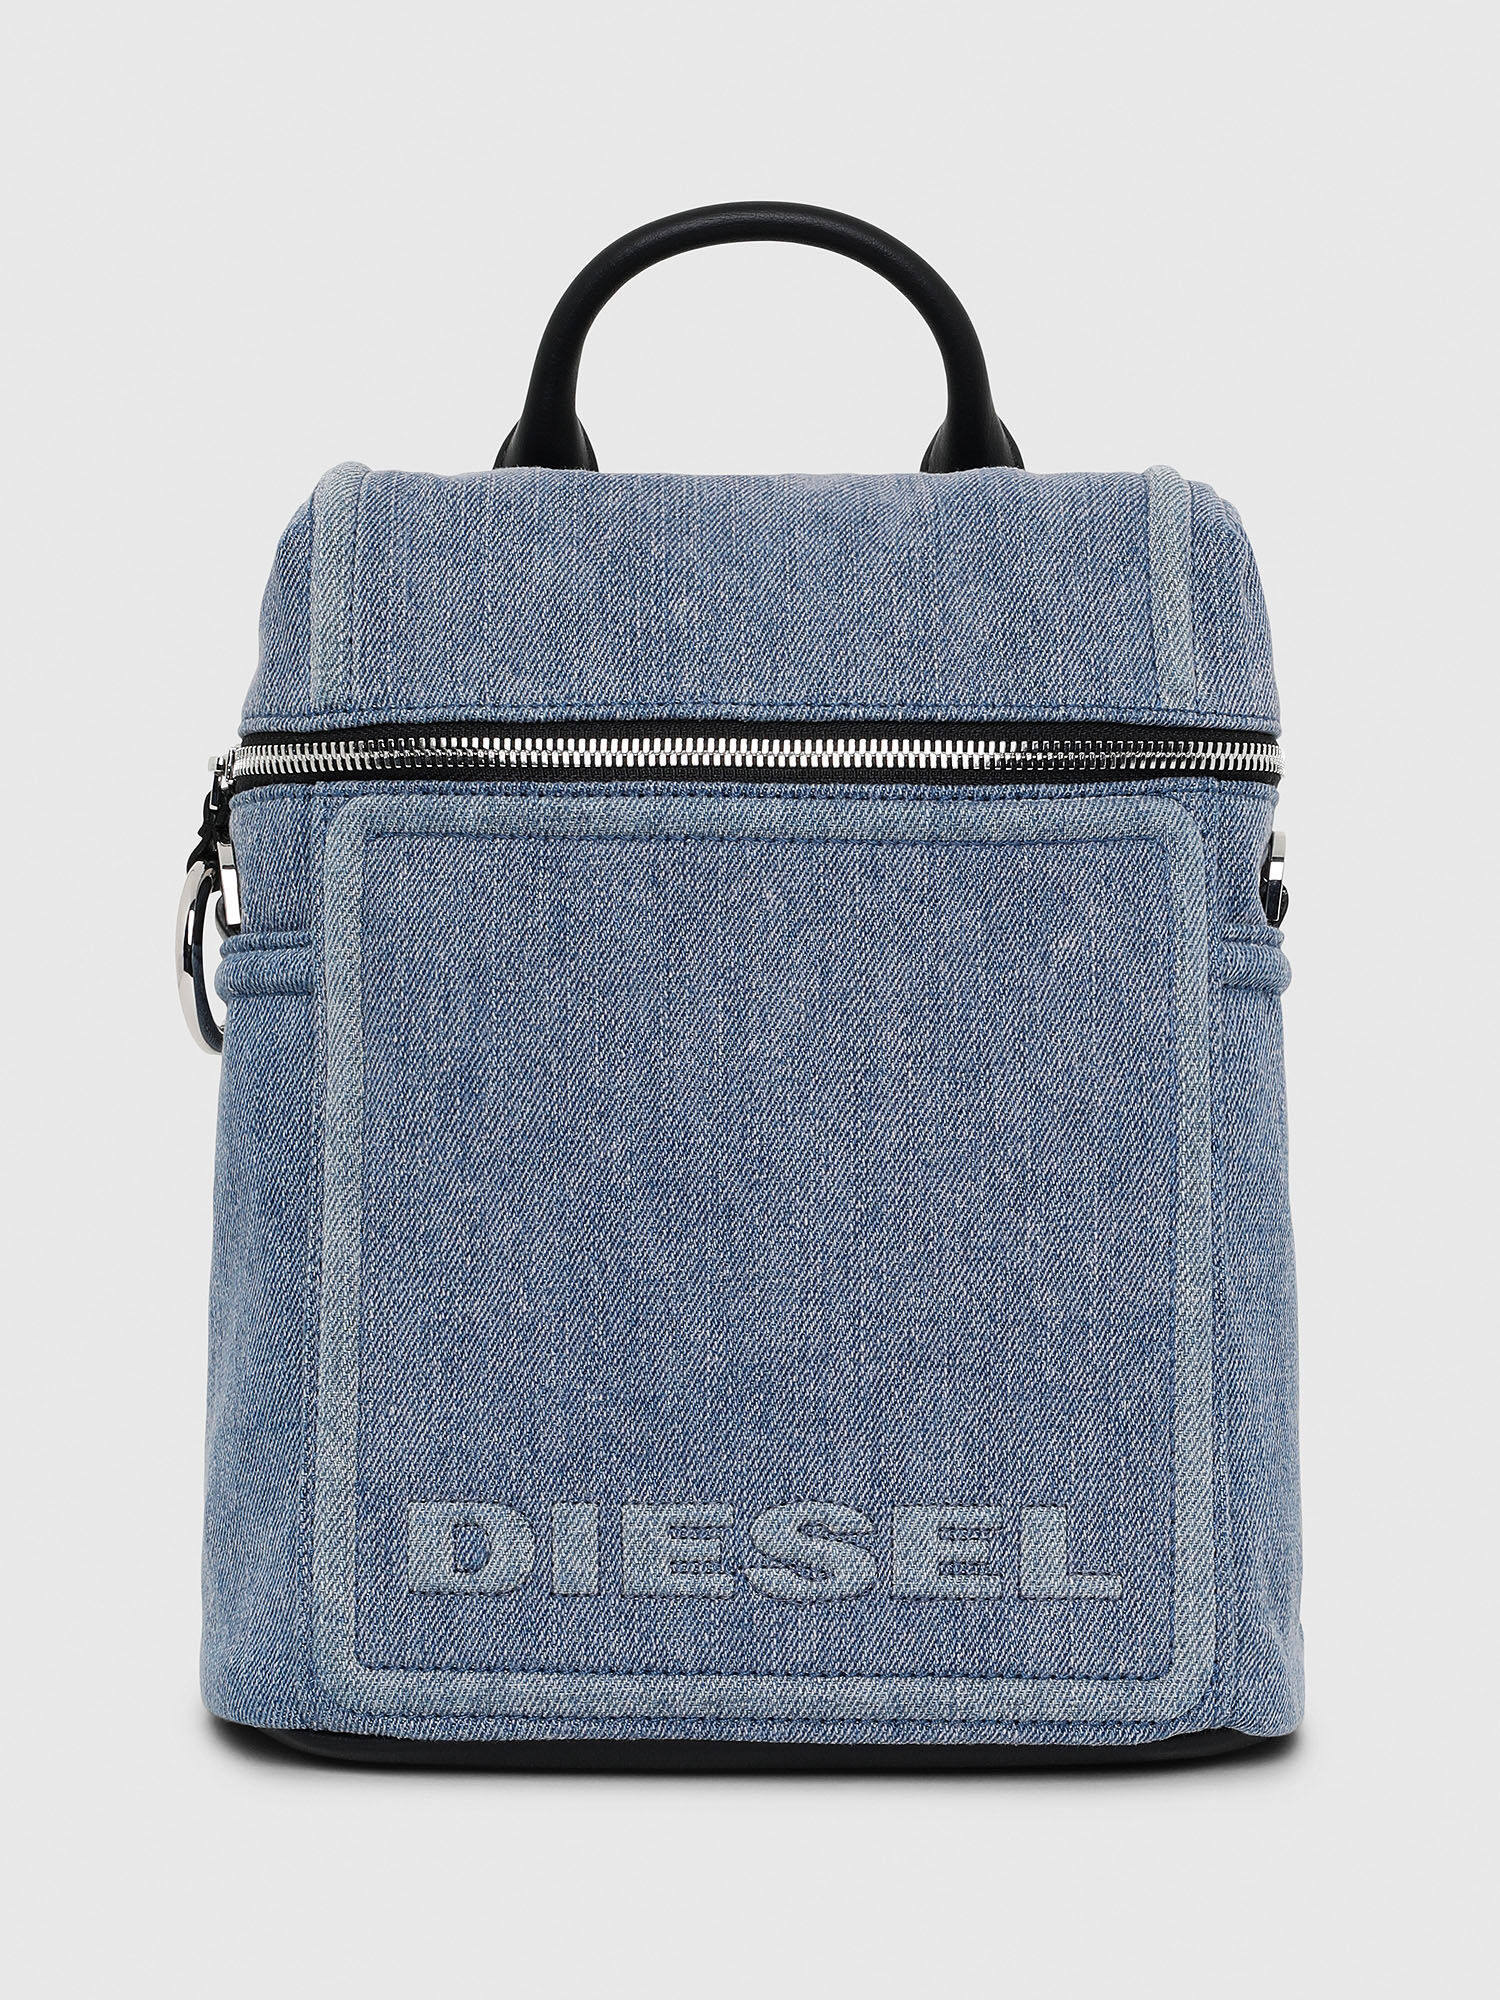 Diesel - ERACLEA II,  - Image 1